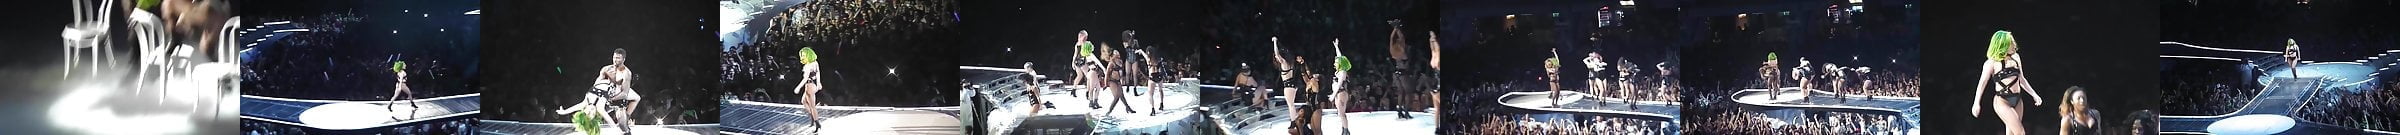 Lady Gaga Free Porn Star Hd Videos 51 Xhamster